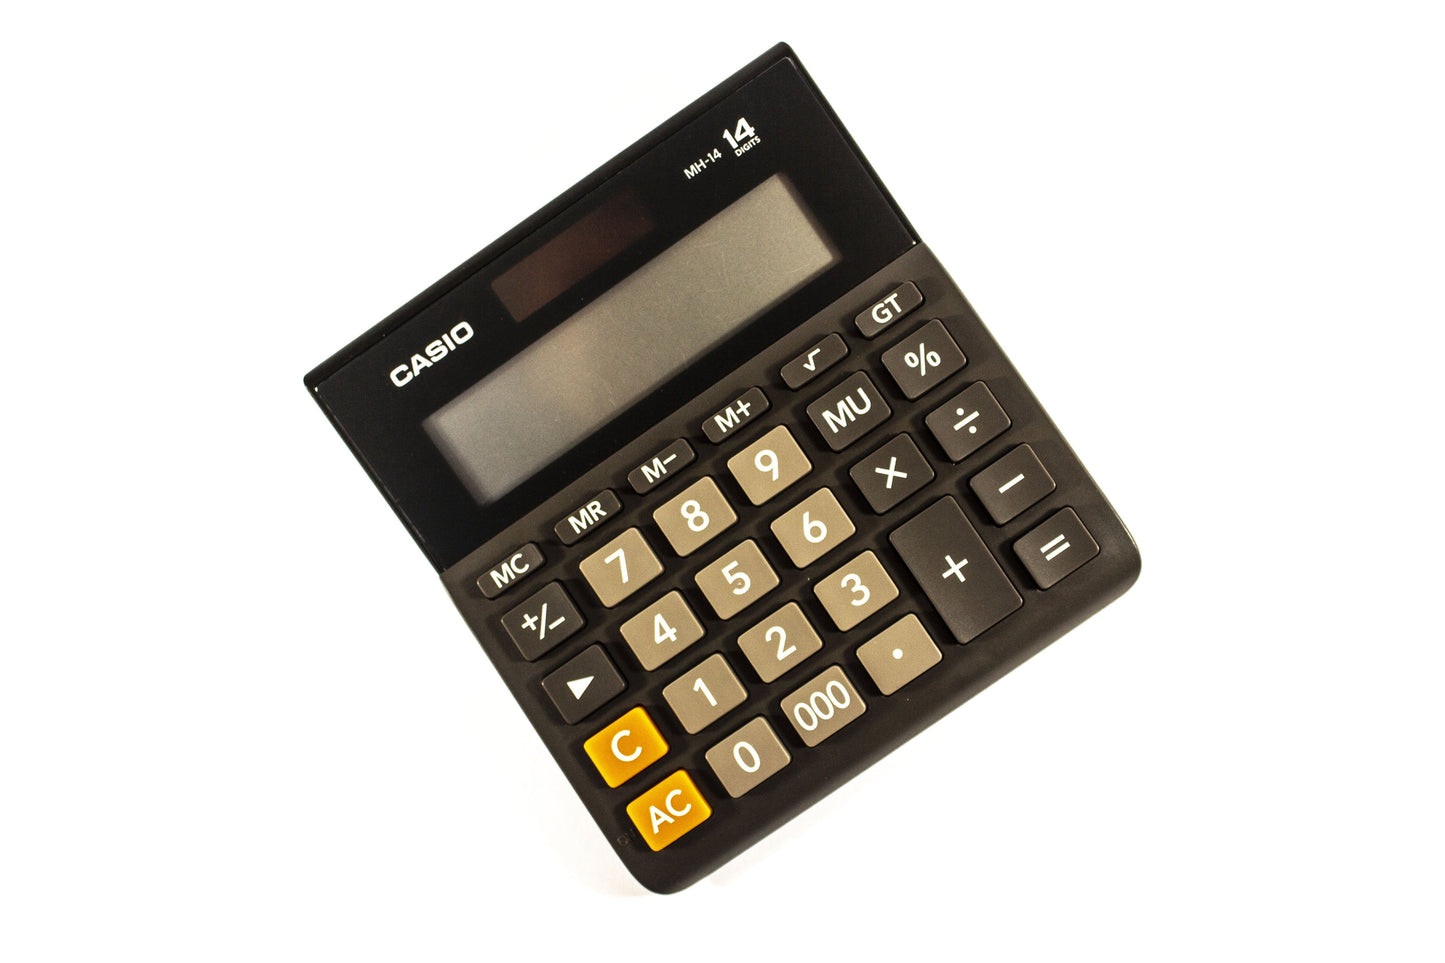 Casio 14 Digits Wide H Calculator MH-14